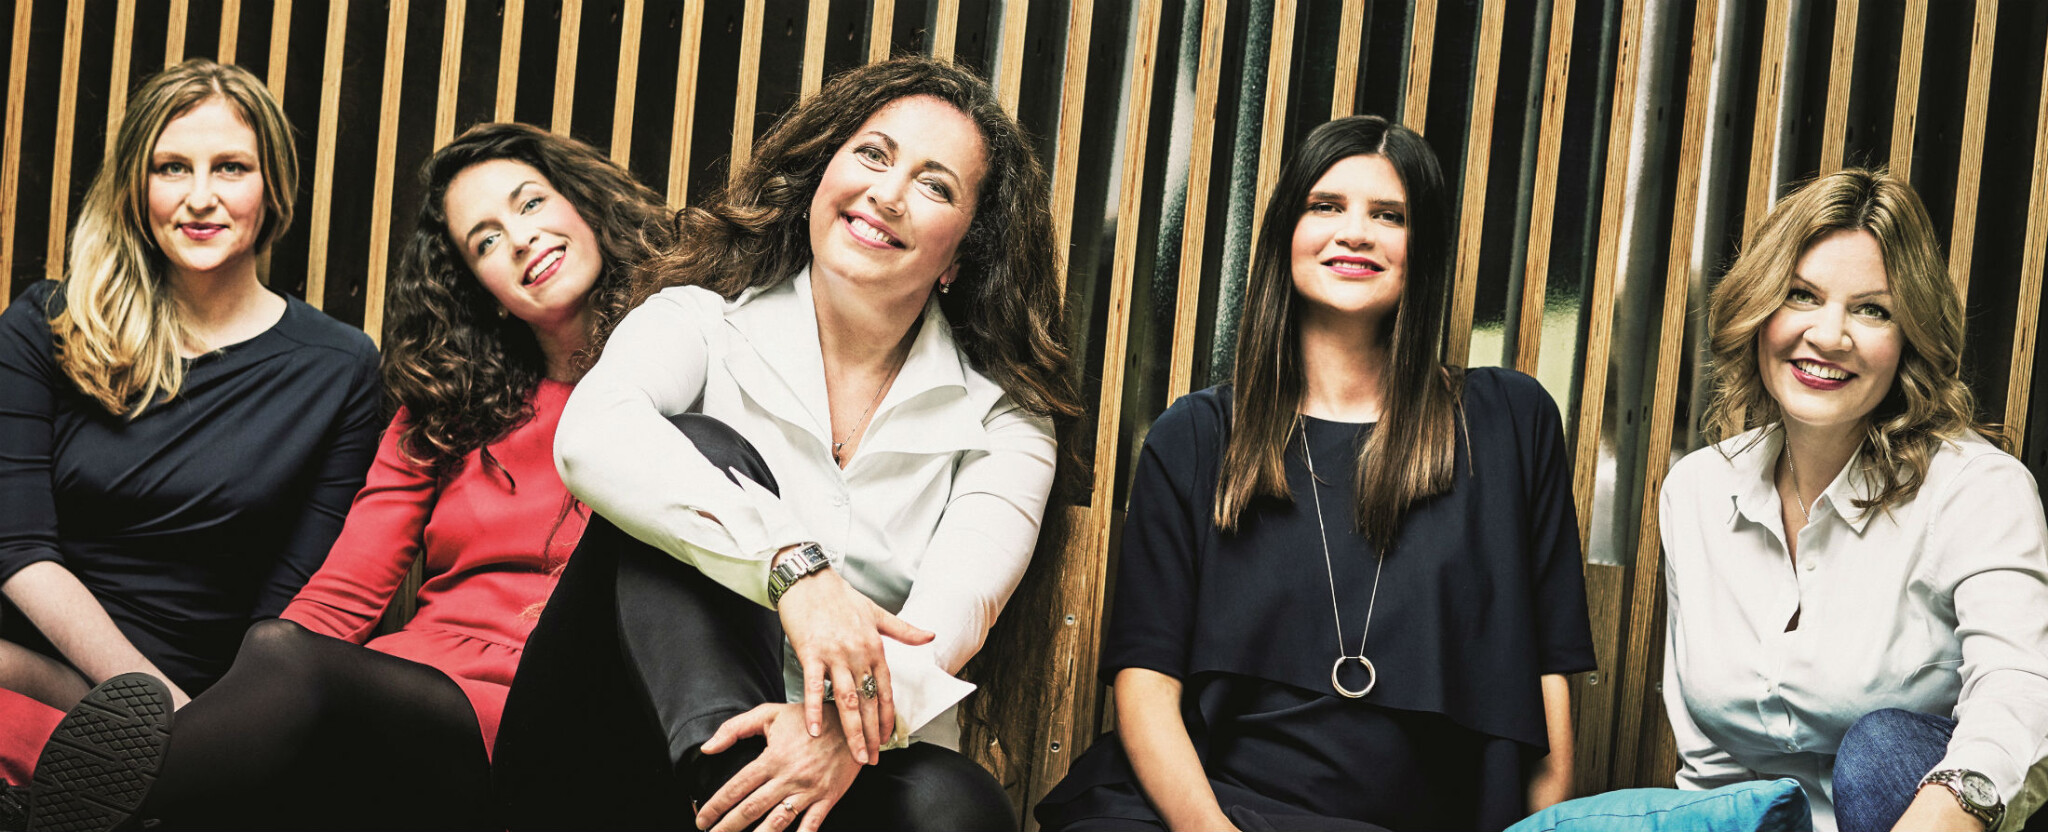 První Forbes Woman: časopis o ženách, jejichž úspěch může inspirovat muže